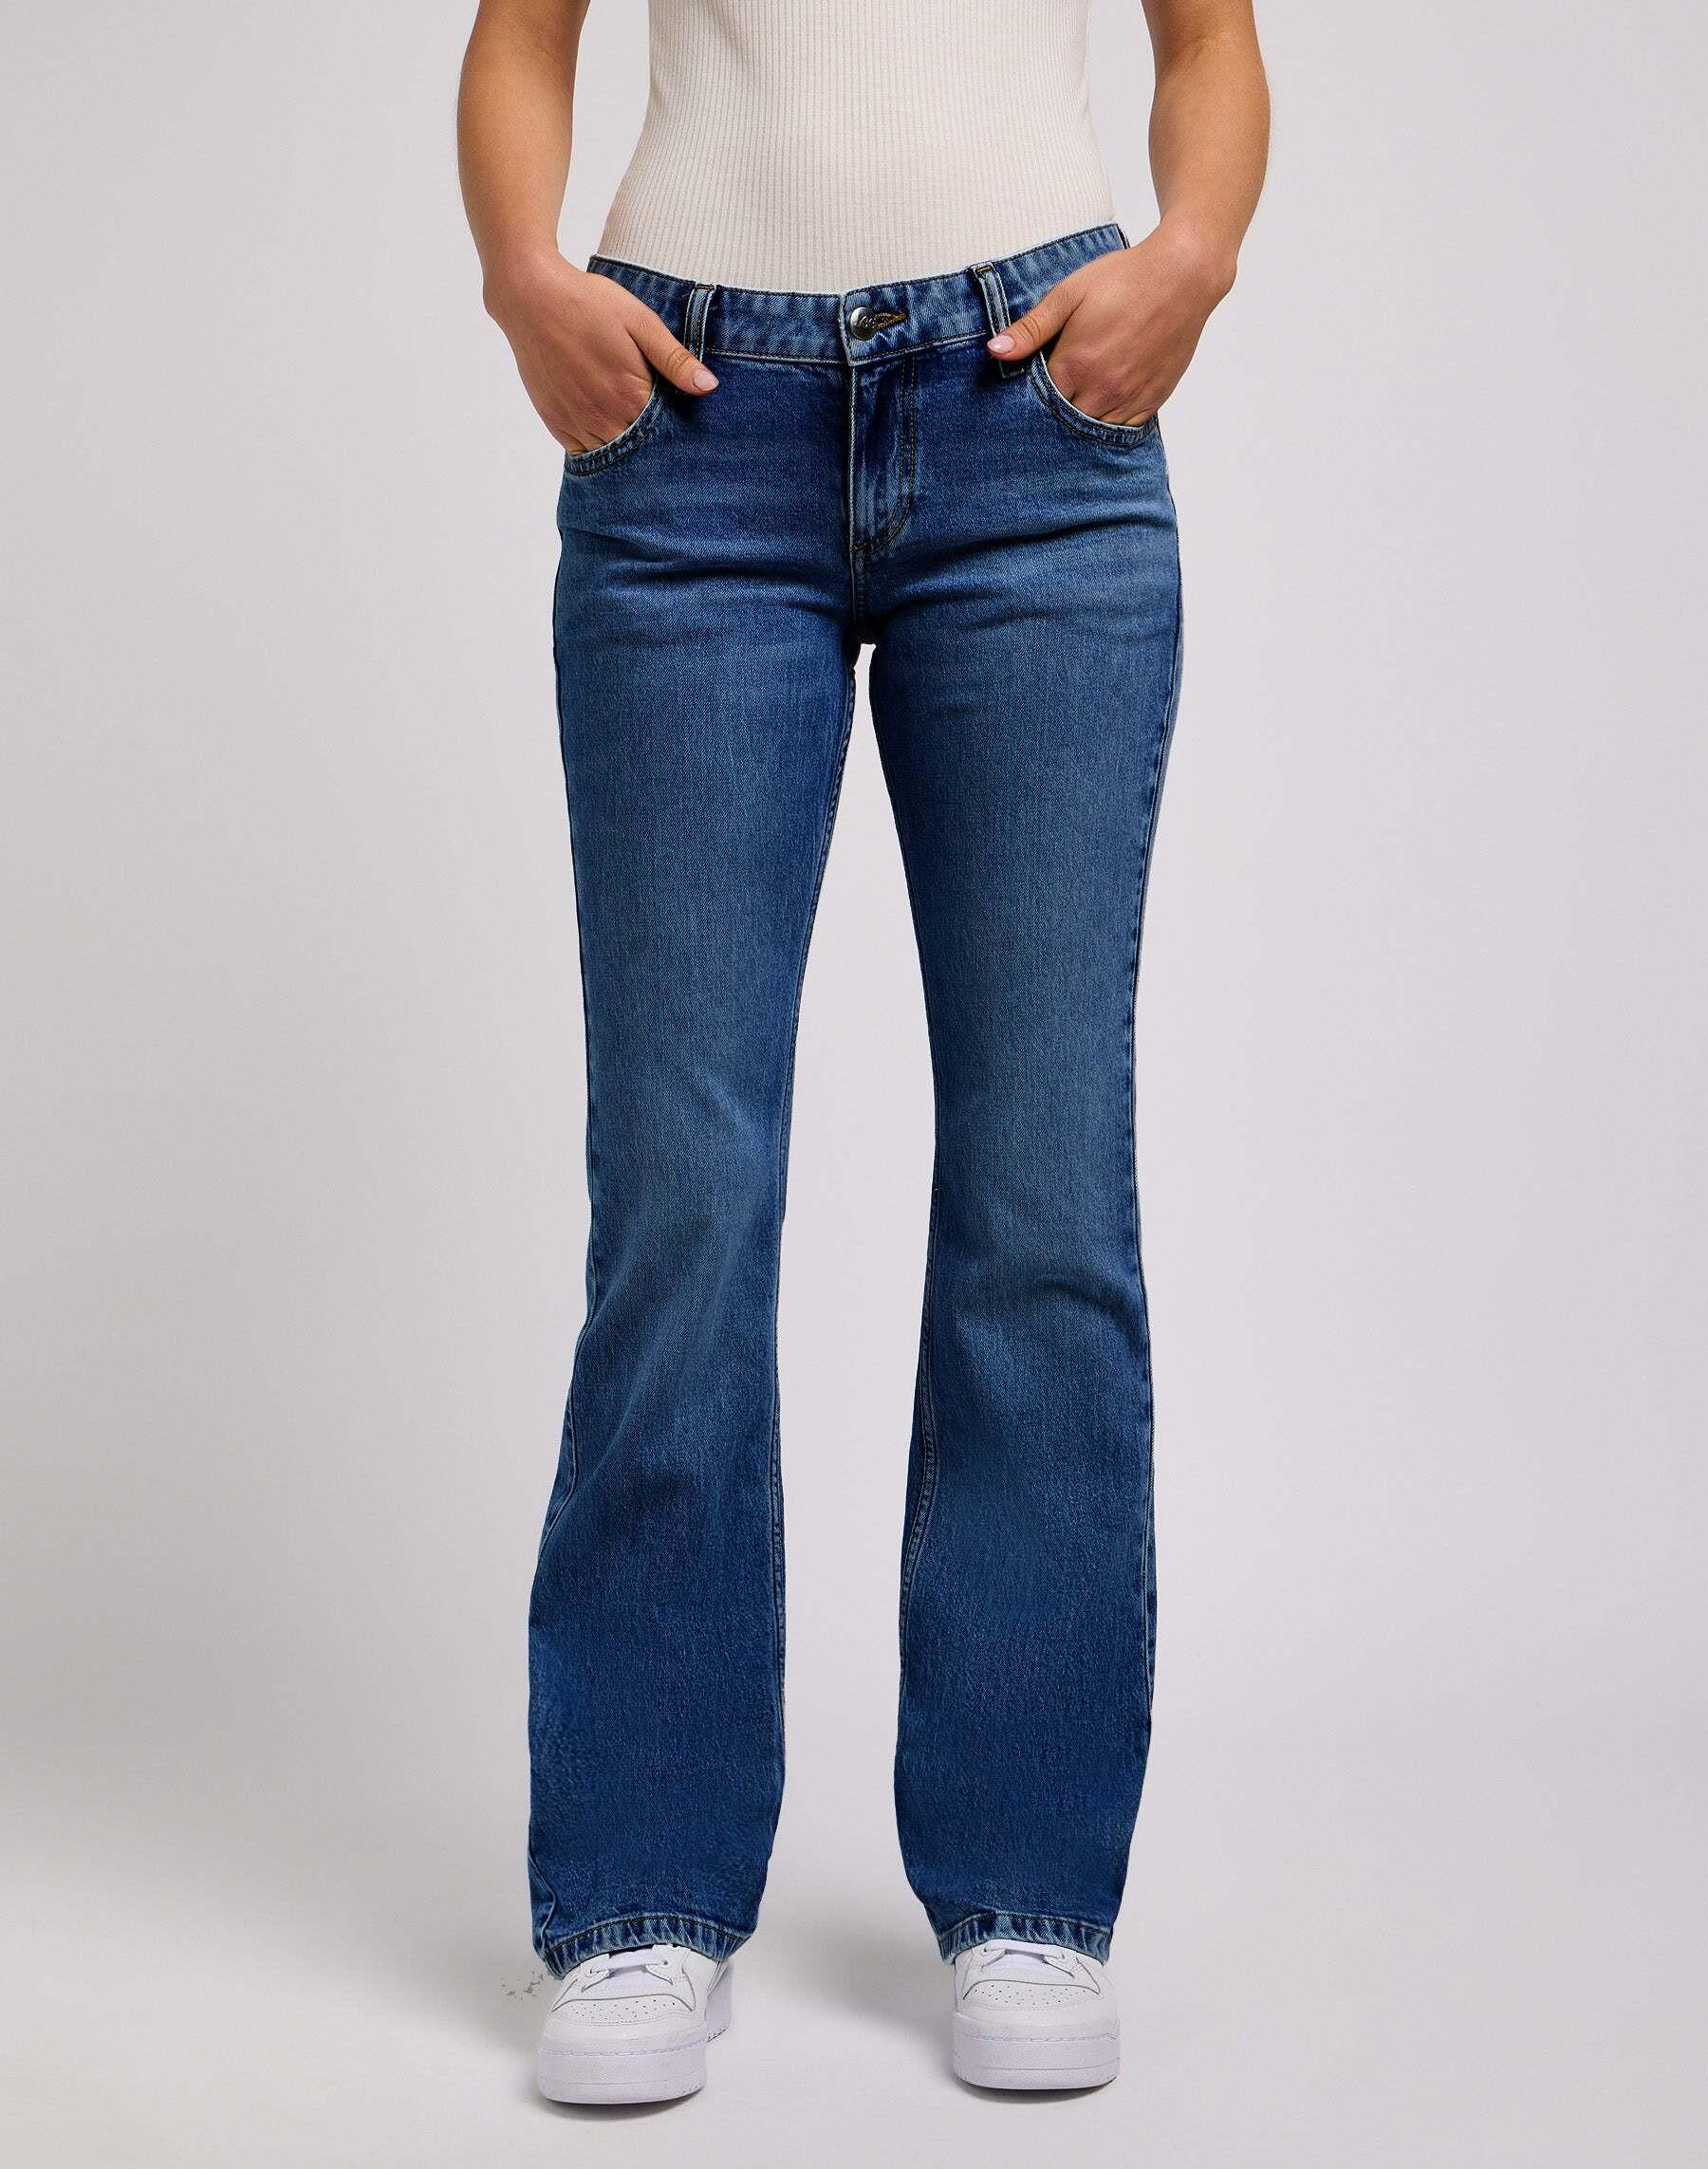 Jeans Straight Leg Marion Straight Damen Blau Denim W34 von Lee